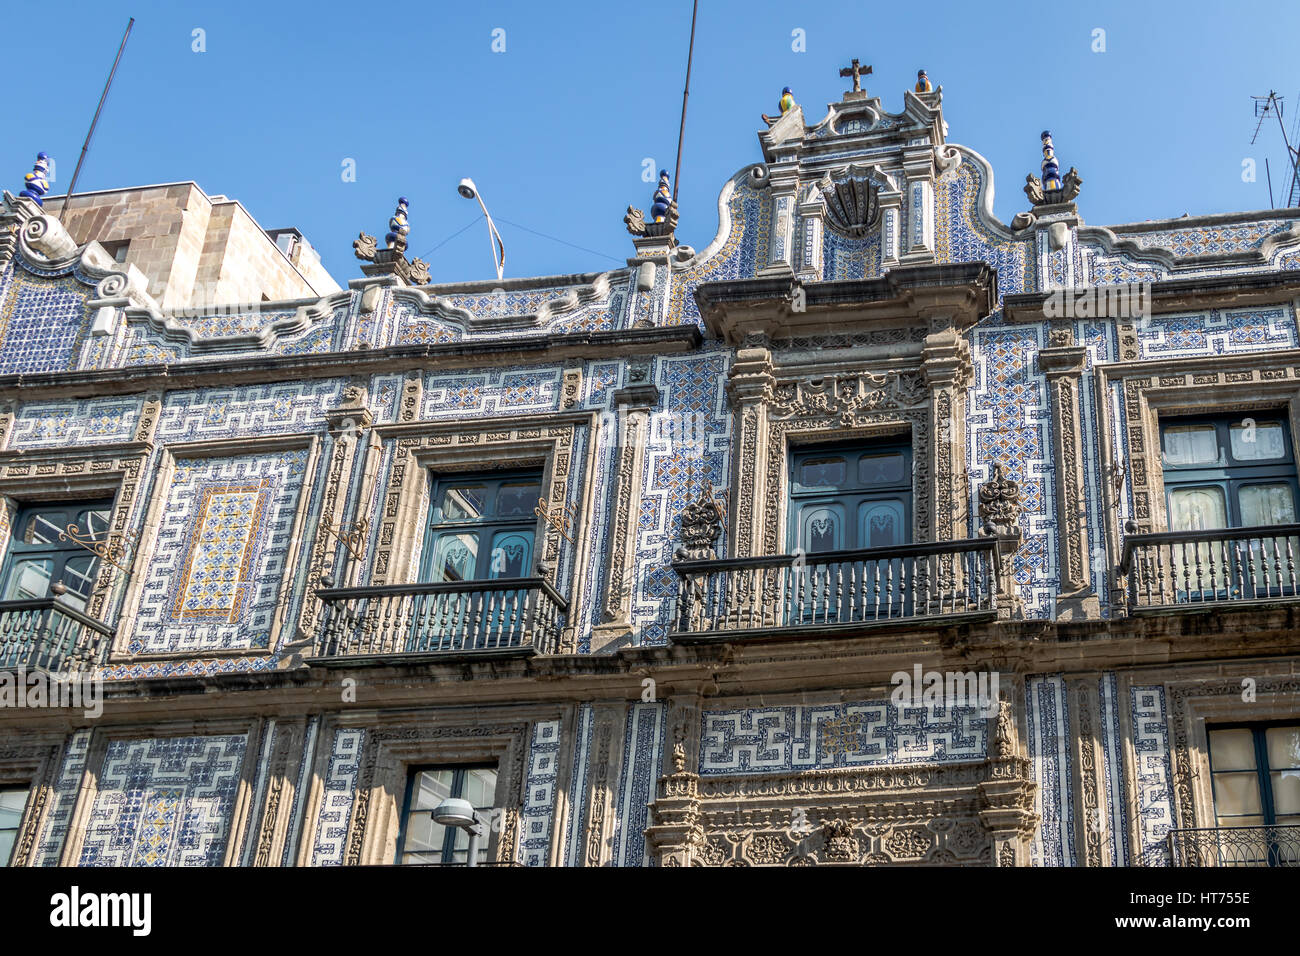 The House of Tiles (Casa de los Azulejos) - Mexico City, Mexico Stock Photo  - Alamy